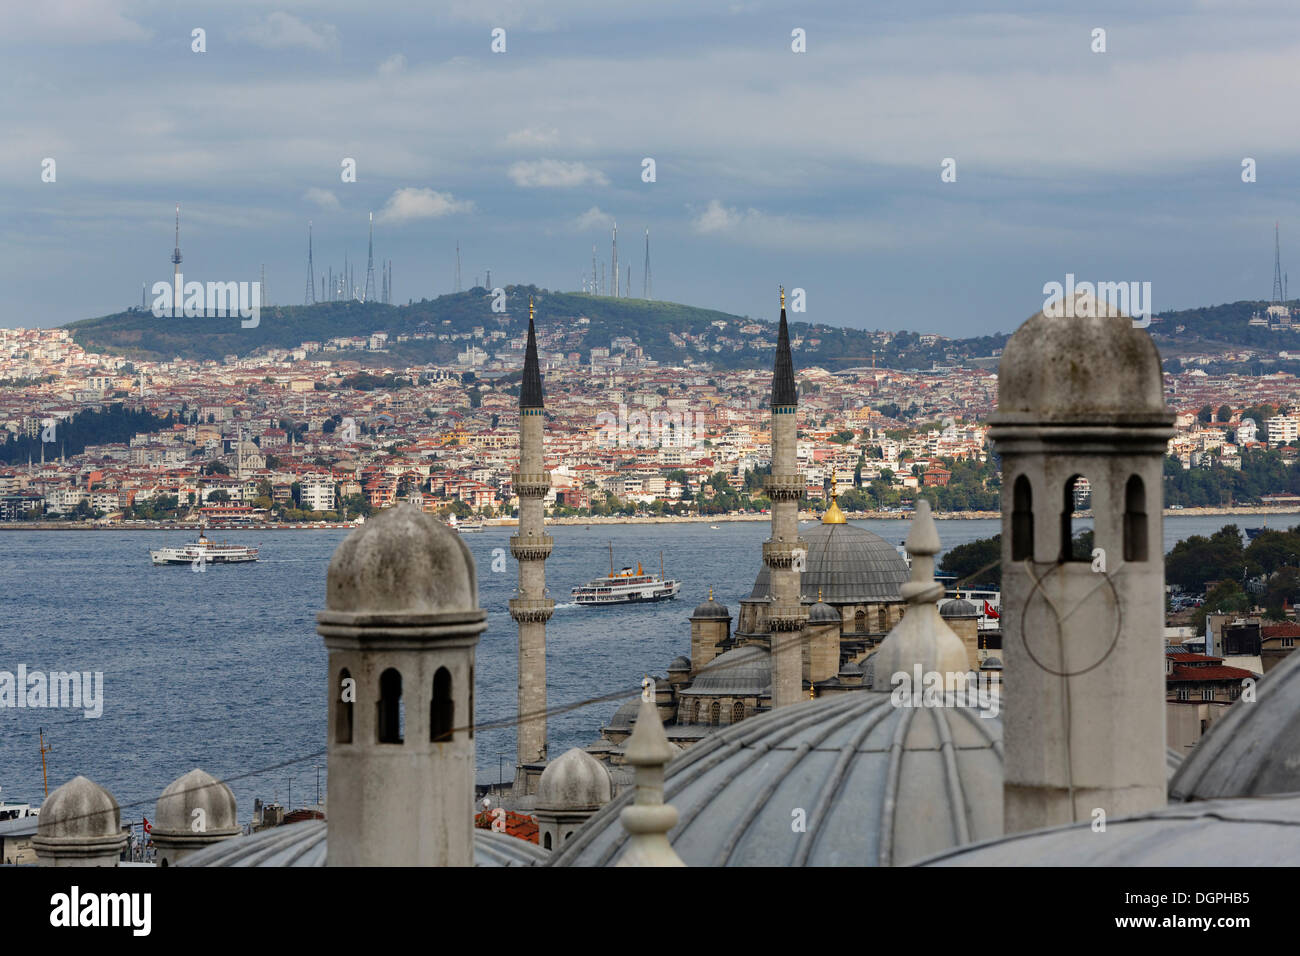 Ansicht der Süleymaniye-Moschee, die Rüstem-Pascha-Moschee und den Bosporus nach Üsküdar auf der asiatischen Seite der Stadt Stockfoto